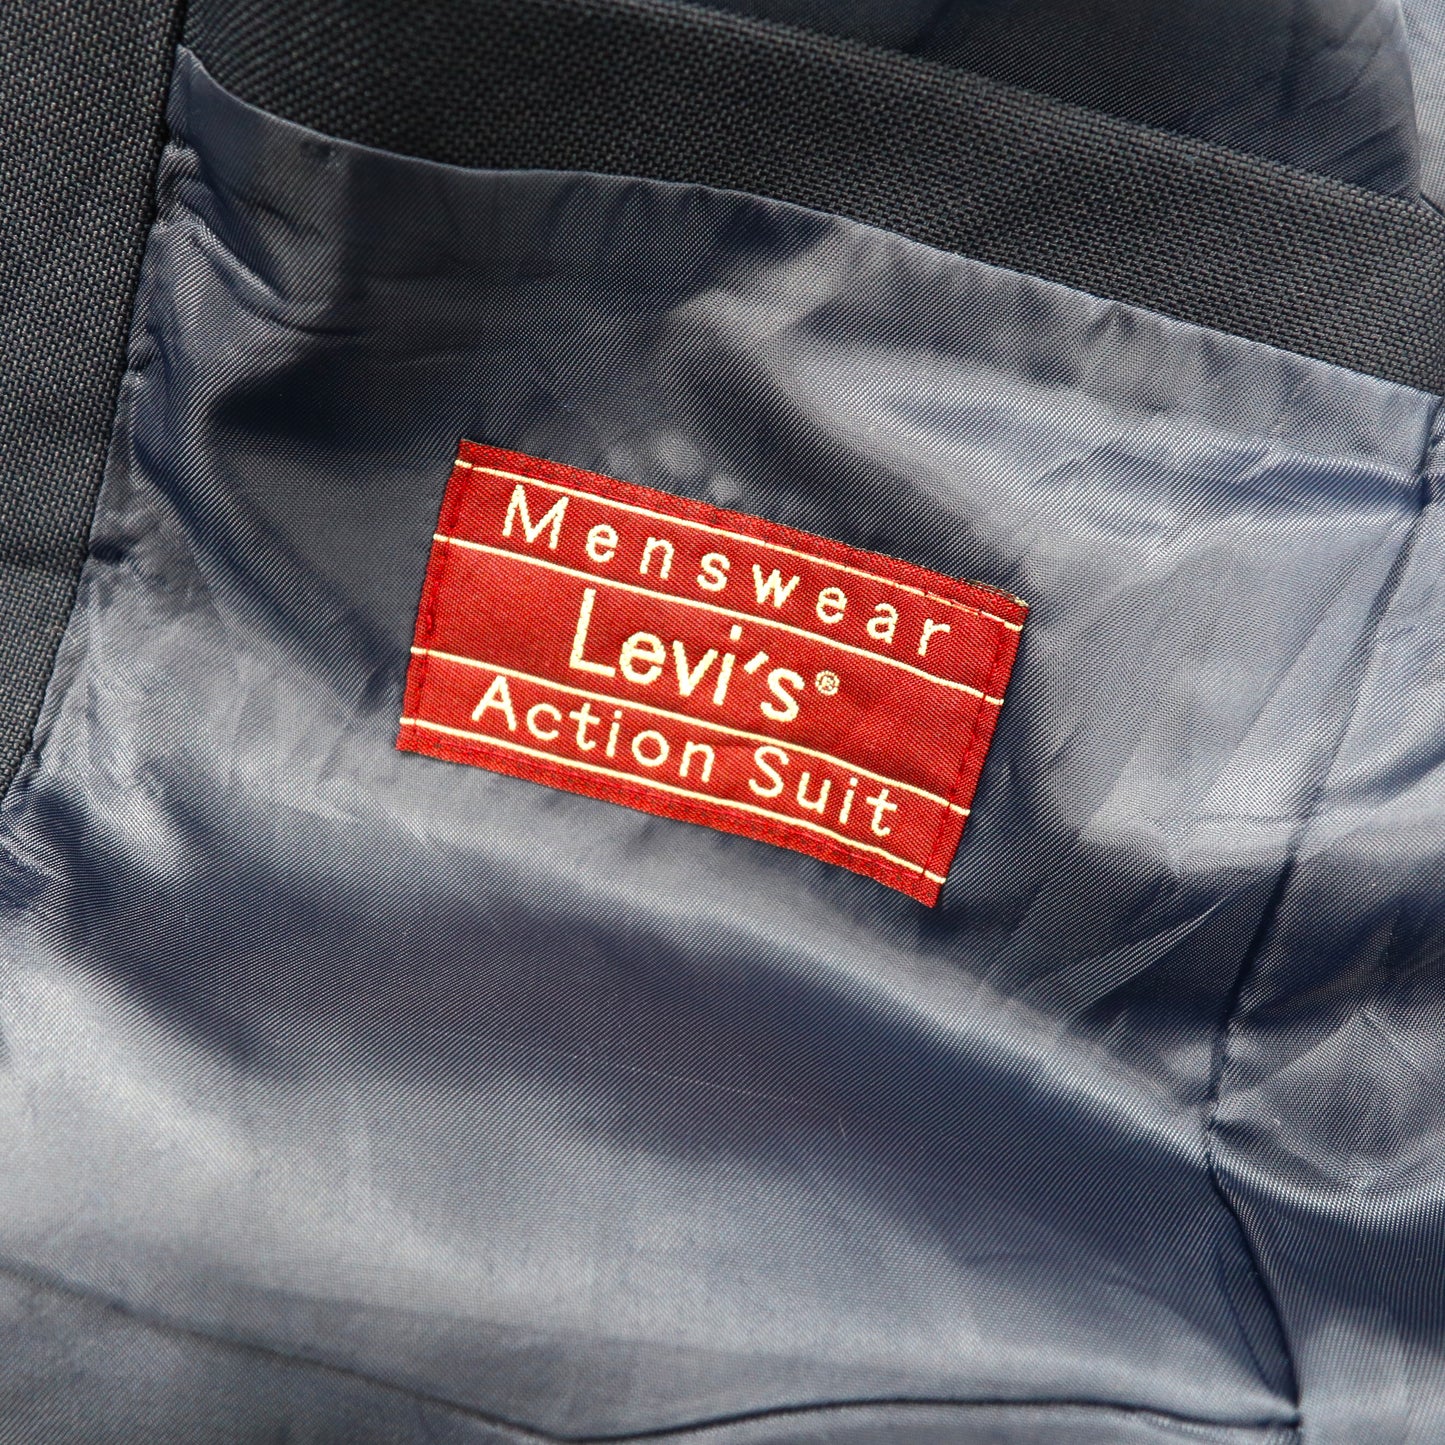 Levi's Action Suit 2Bテーラードジャケット L ネイビー ウール STA-PREST スタプレ 80年代